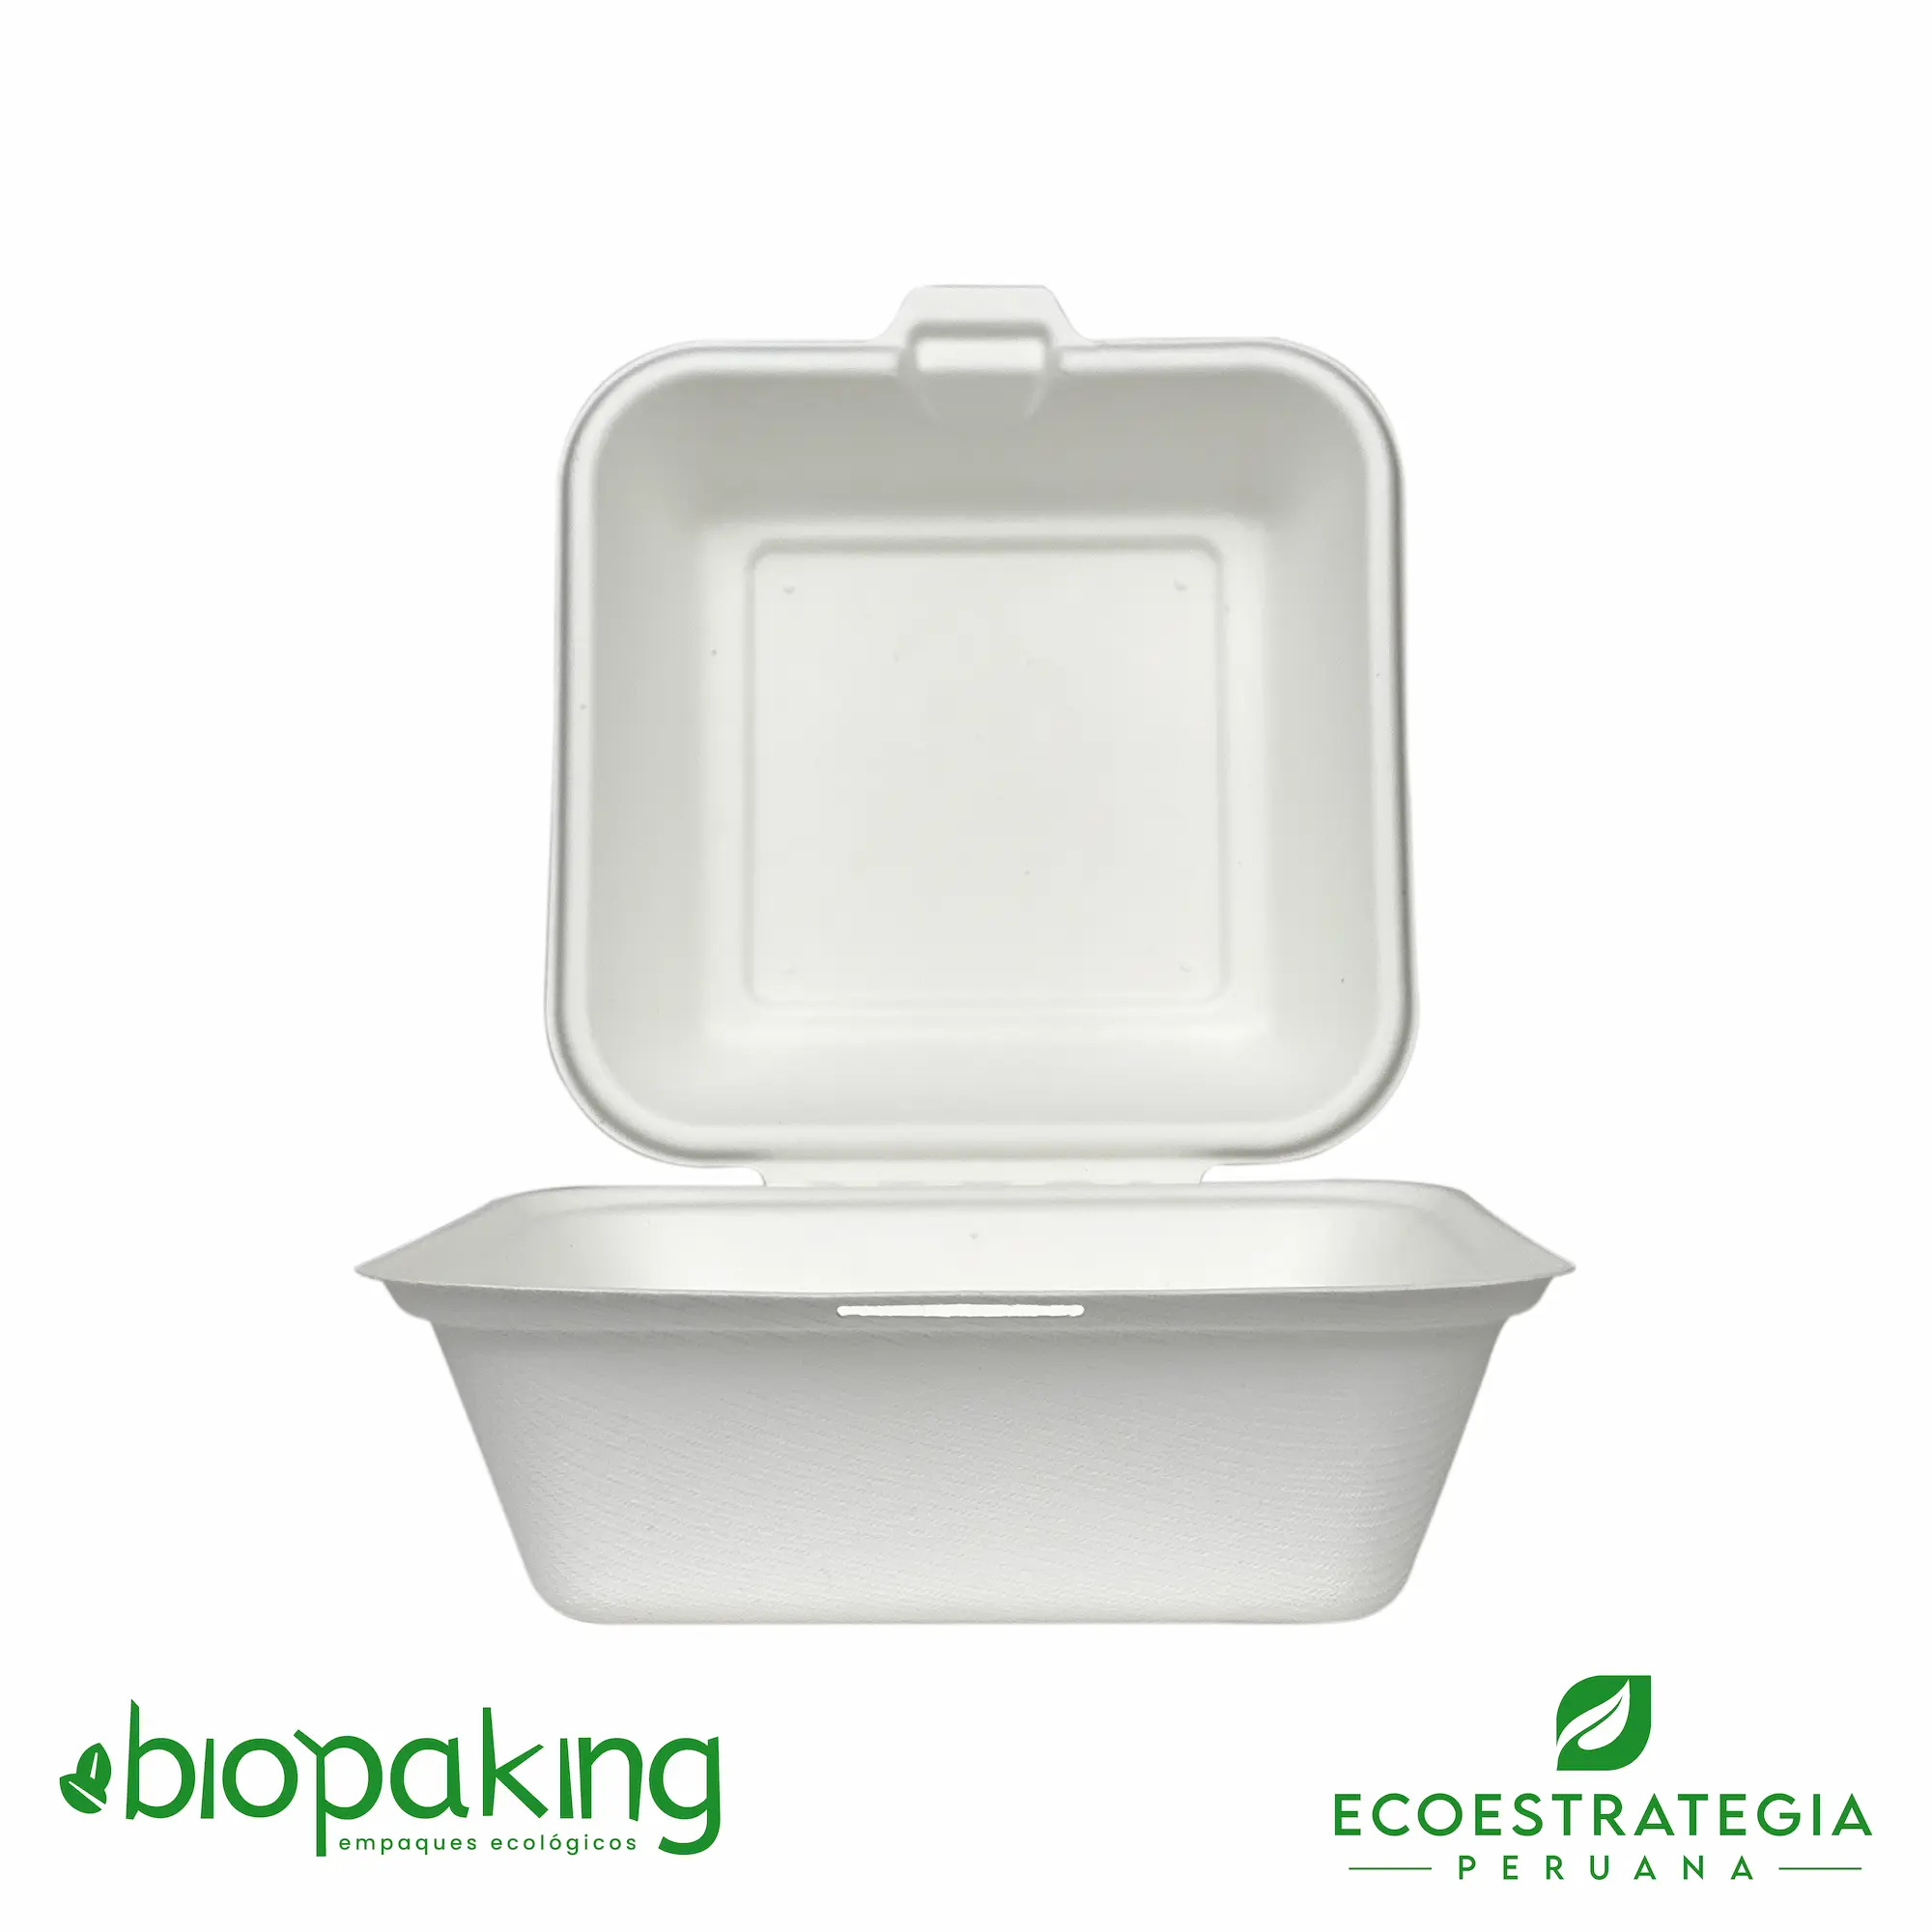 envases biodegradables, materiales biodegradables, productos biodegradables, taper biodegradables, taper para comida, tapers descartables, empaques ecologicos, empaques biodegradables, envases ecologicos, envases biodegradables para alimentos, empaques biodegradables para alimentos, envases descartables para comida, taper ct4, bagazo de caña de azucar, bagazo de caña, contenedores biodegradables, contenedores ecologicos, descartable biodegradable, ct4